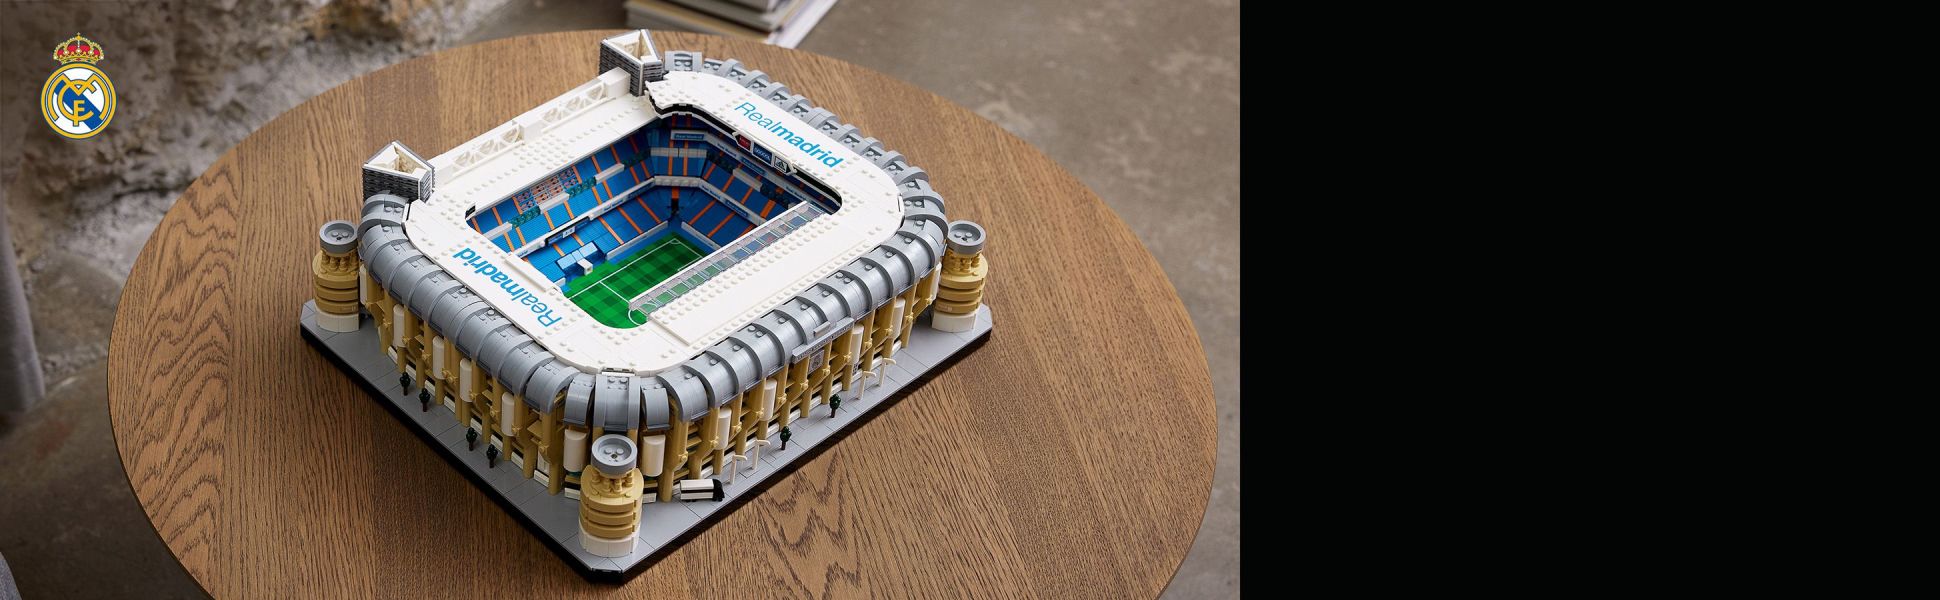 Así es el coleccionable del Real Madrid y el Santiago Bernbéu de LEGO